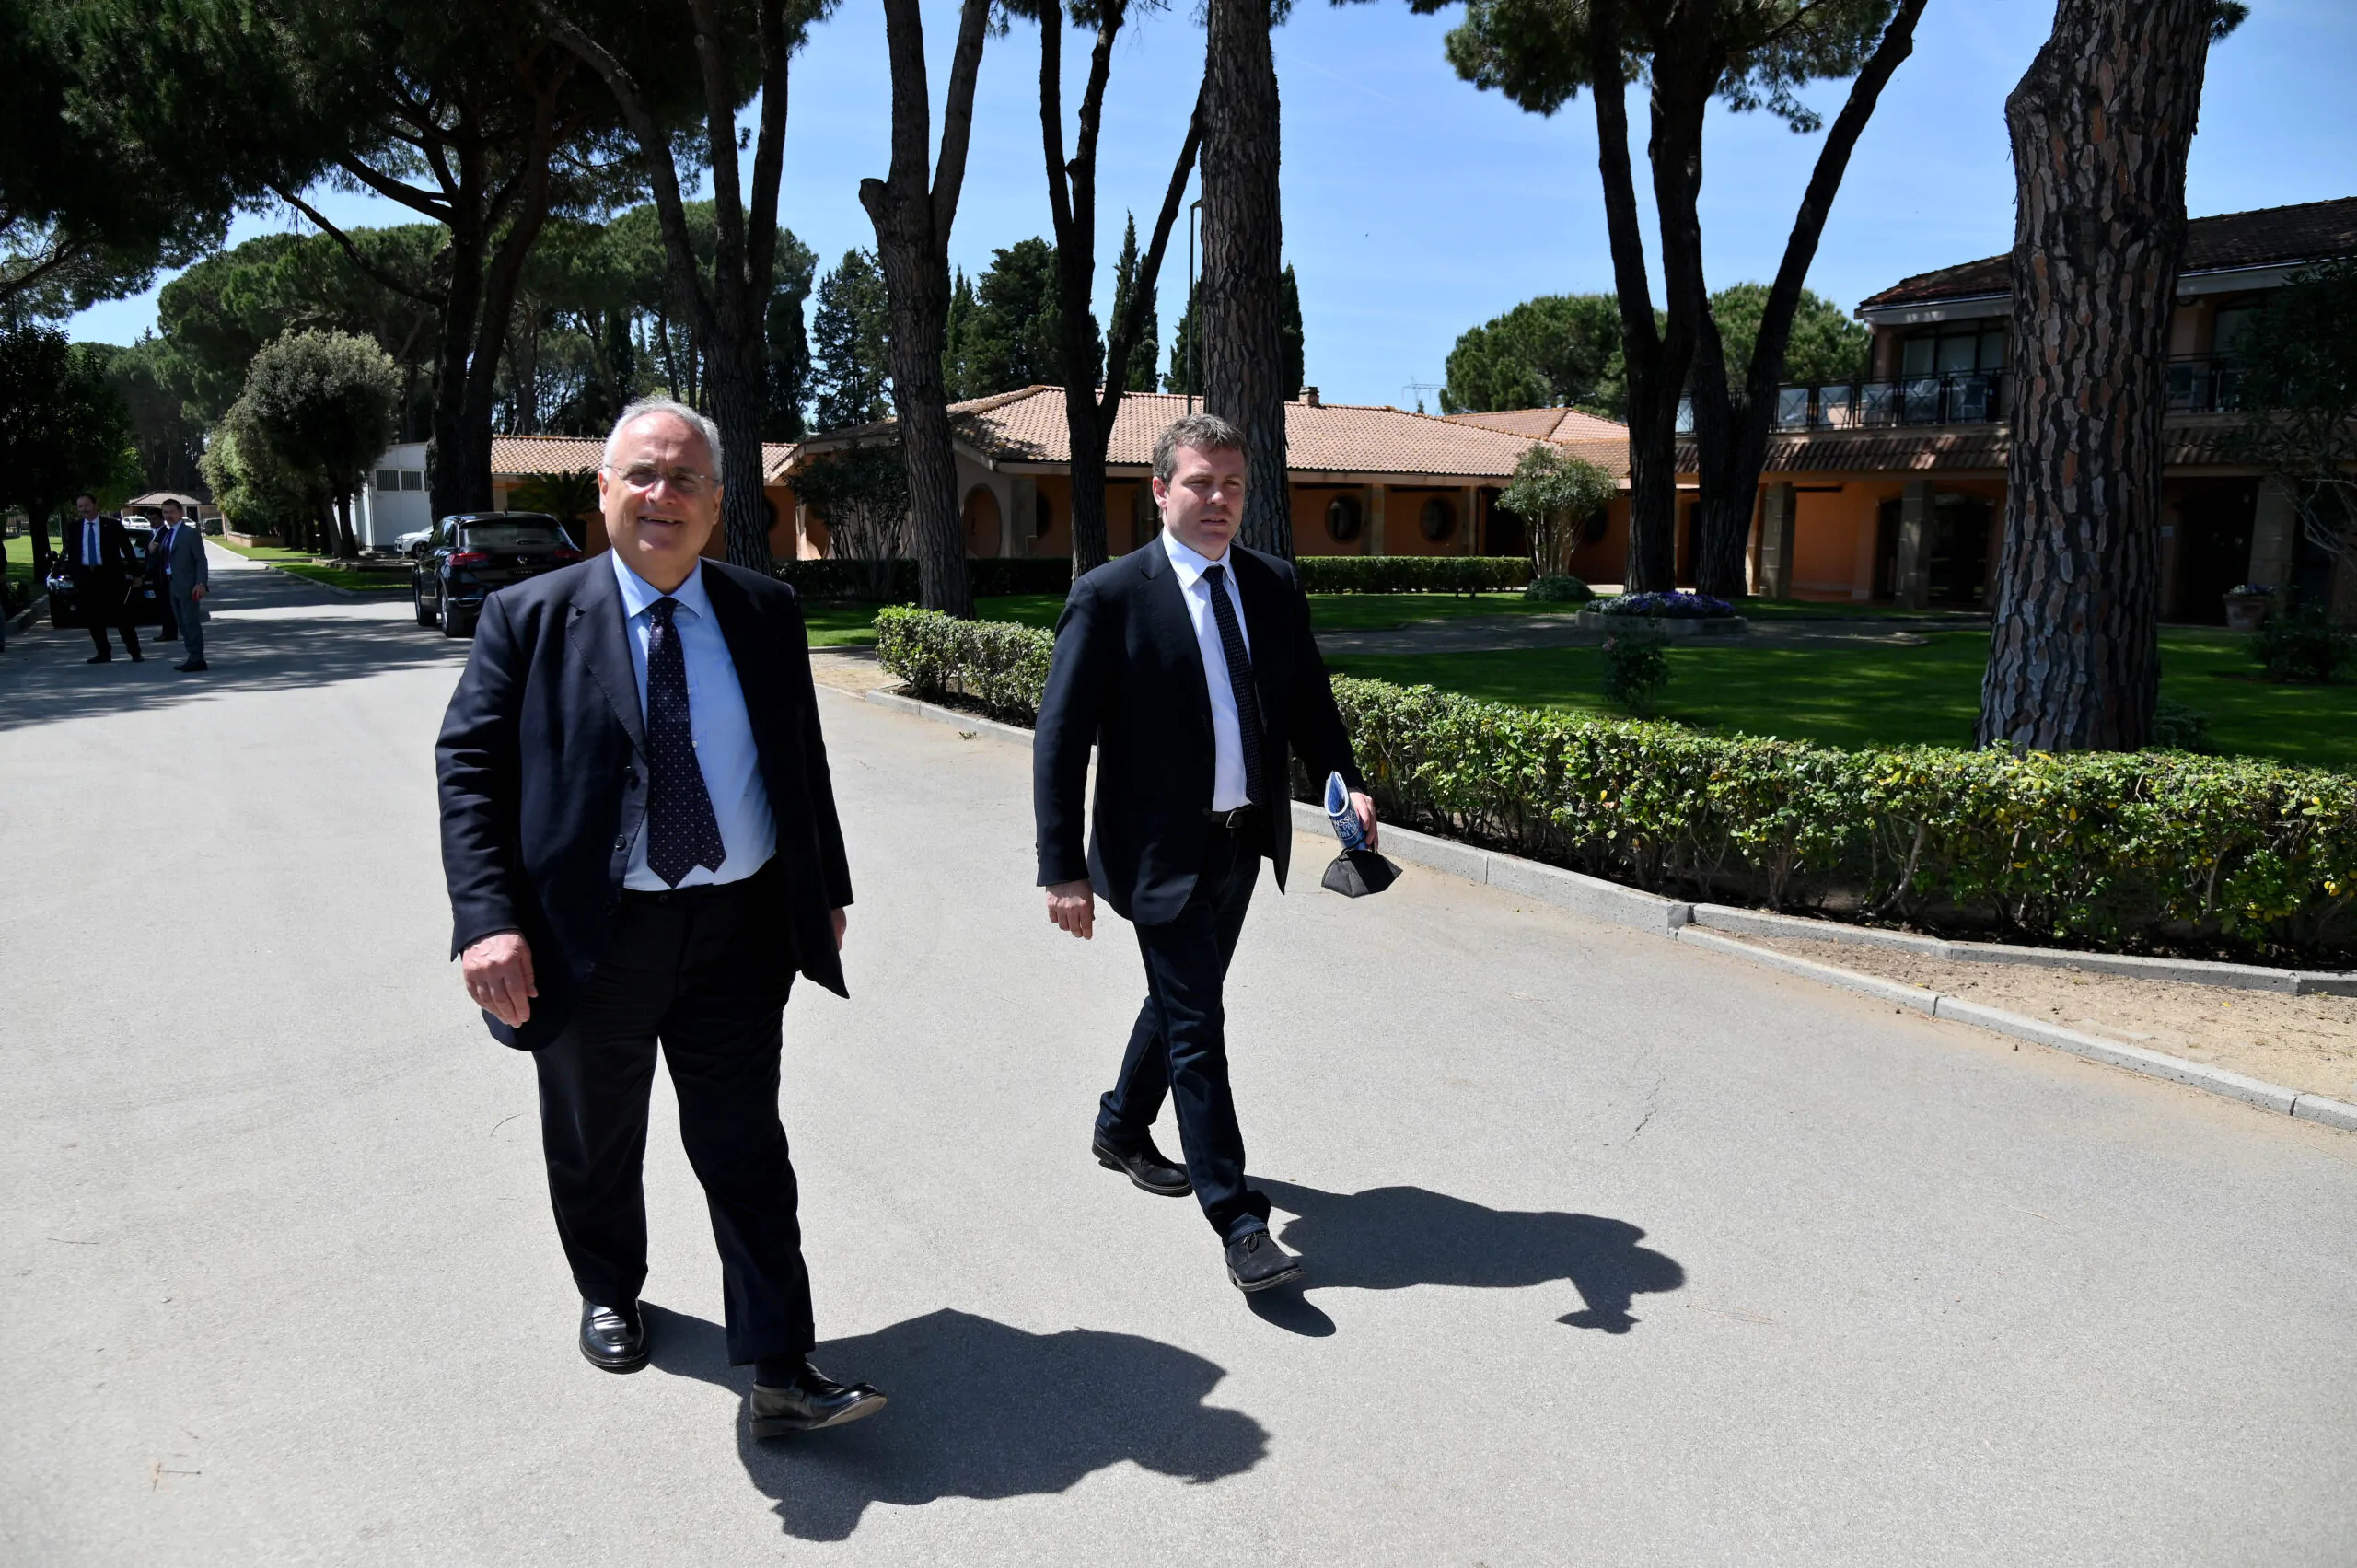 Il presidente Casini avvisa i club: “Siamo fiduciosi che si troverà una soluzione”